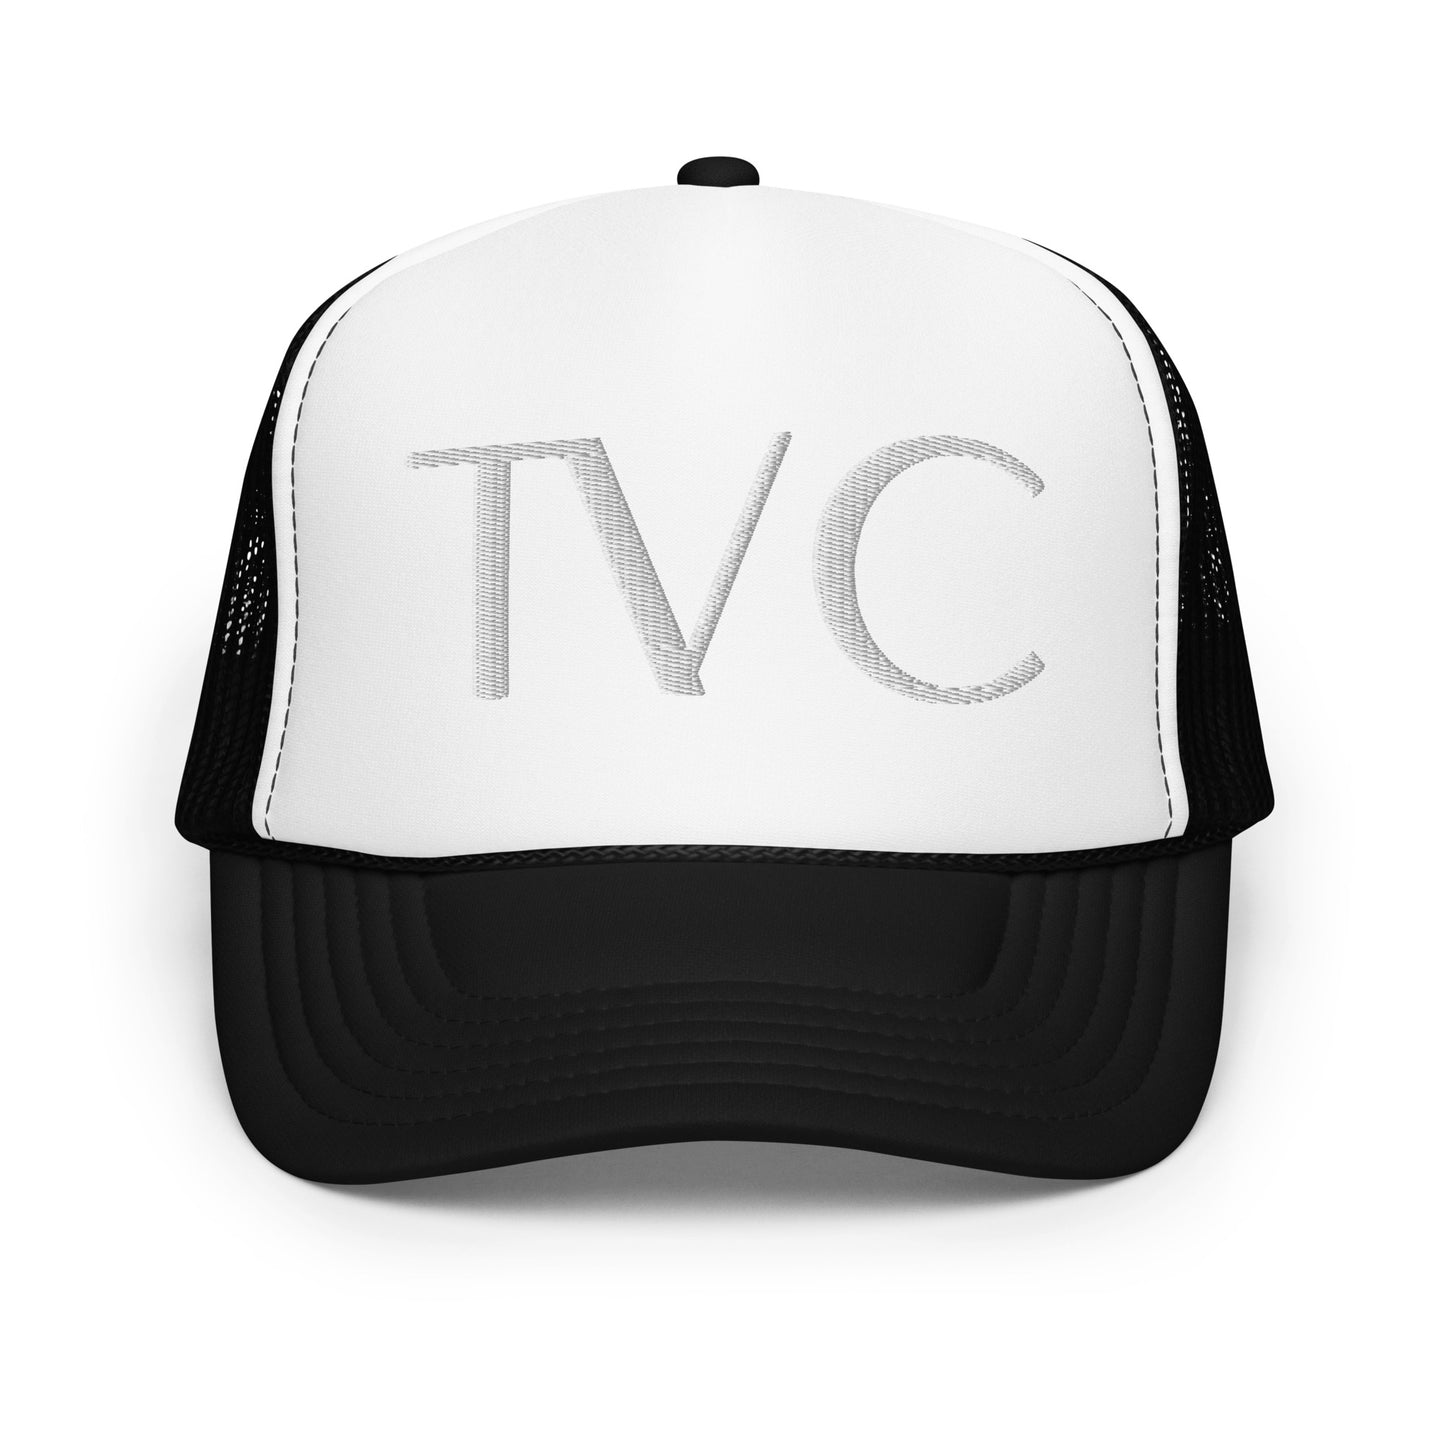 TVC: Foam trucker hat